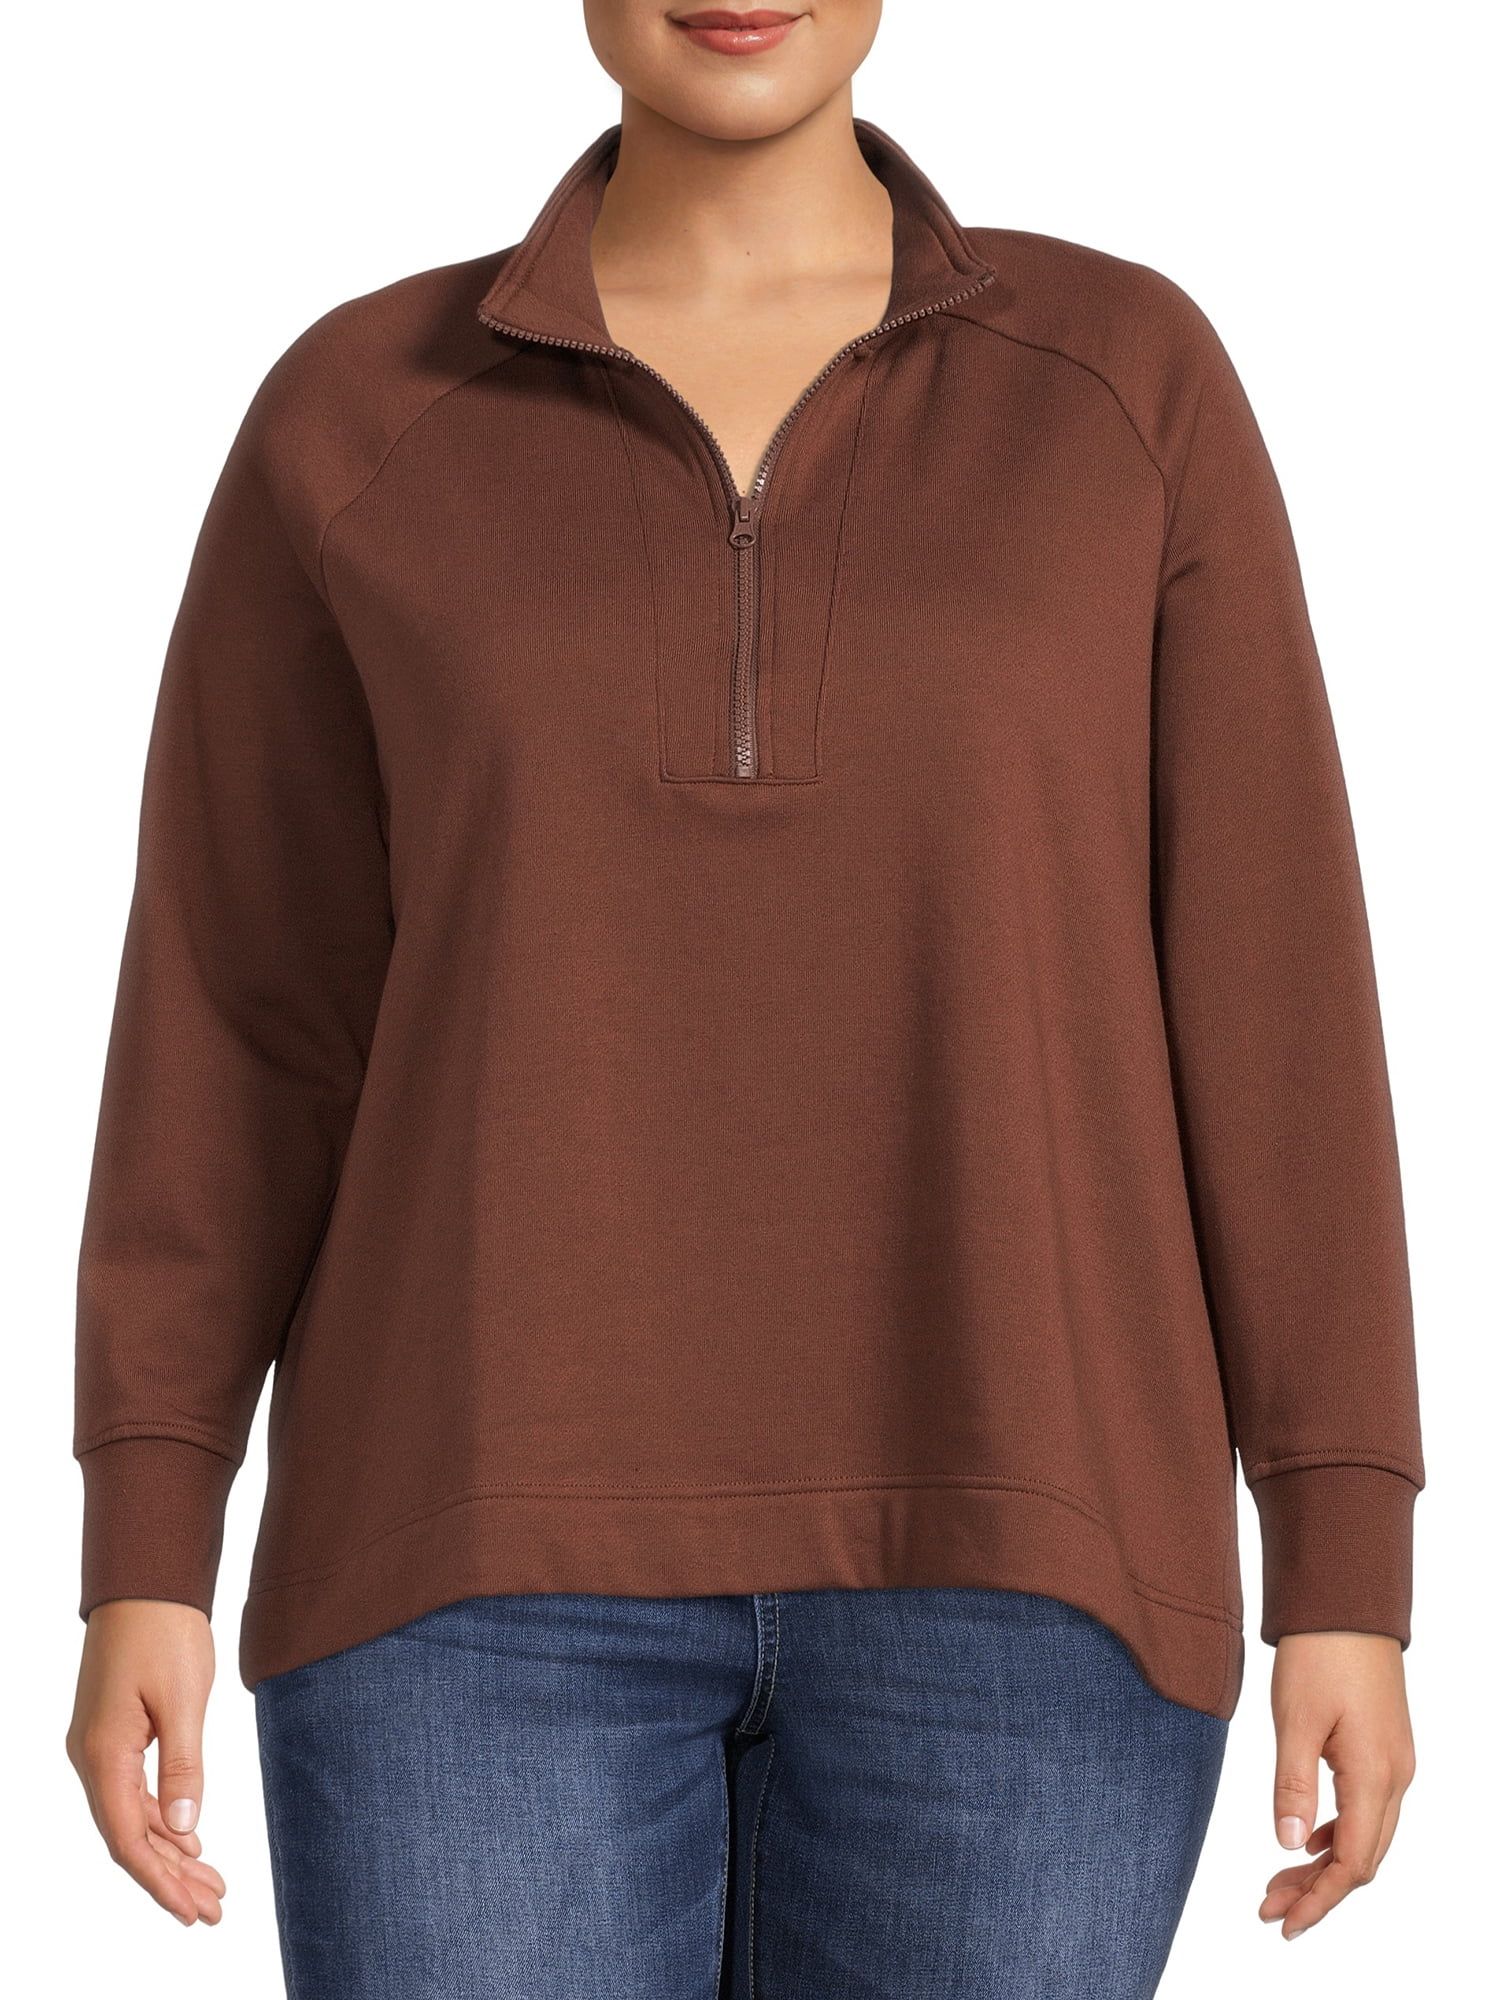 Terra & Sky Women's Plus Size Quarter-Zip Pullover Sweatshirt | Walmart (US)